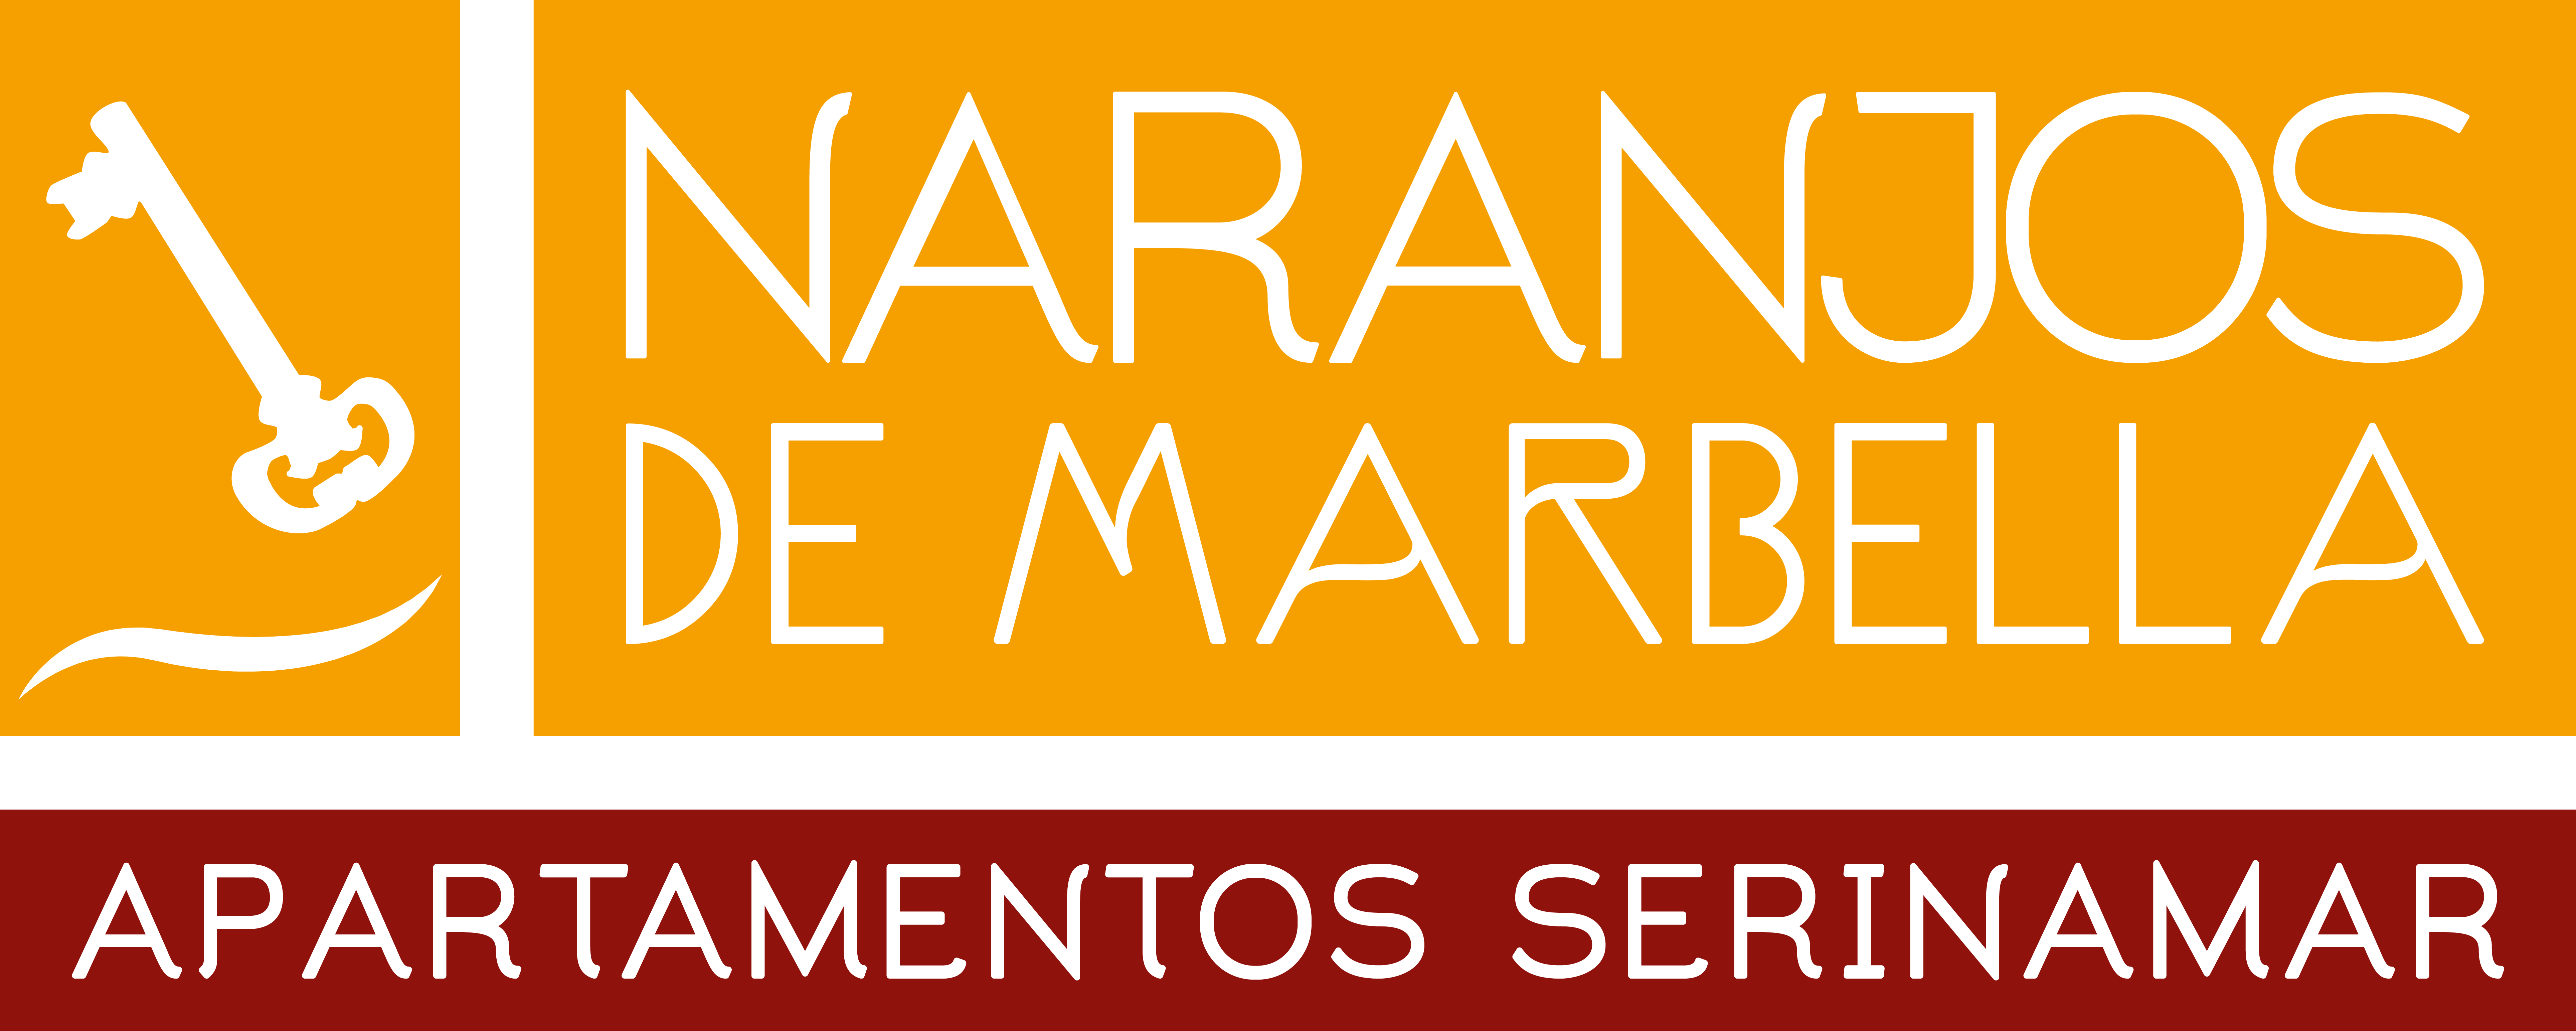 Apartamentos Serinamar Naranjos de Marbella